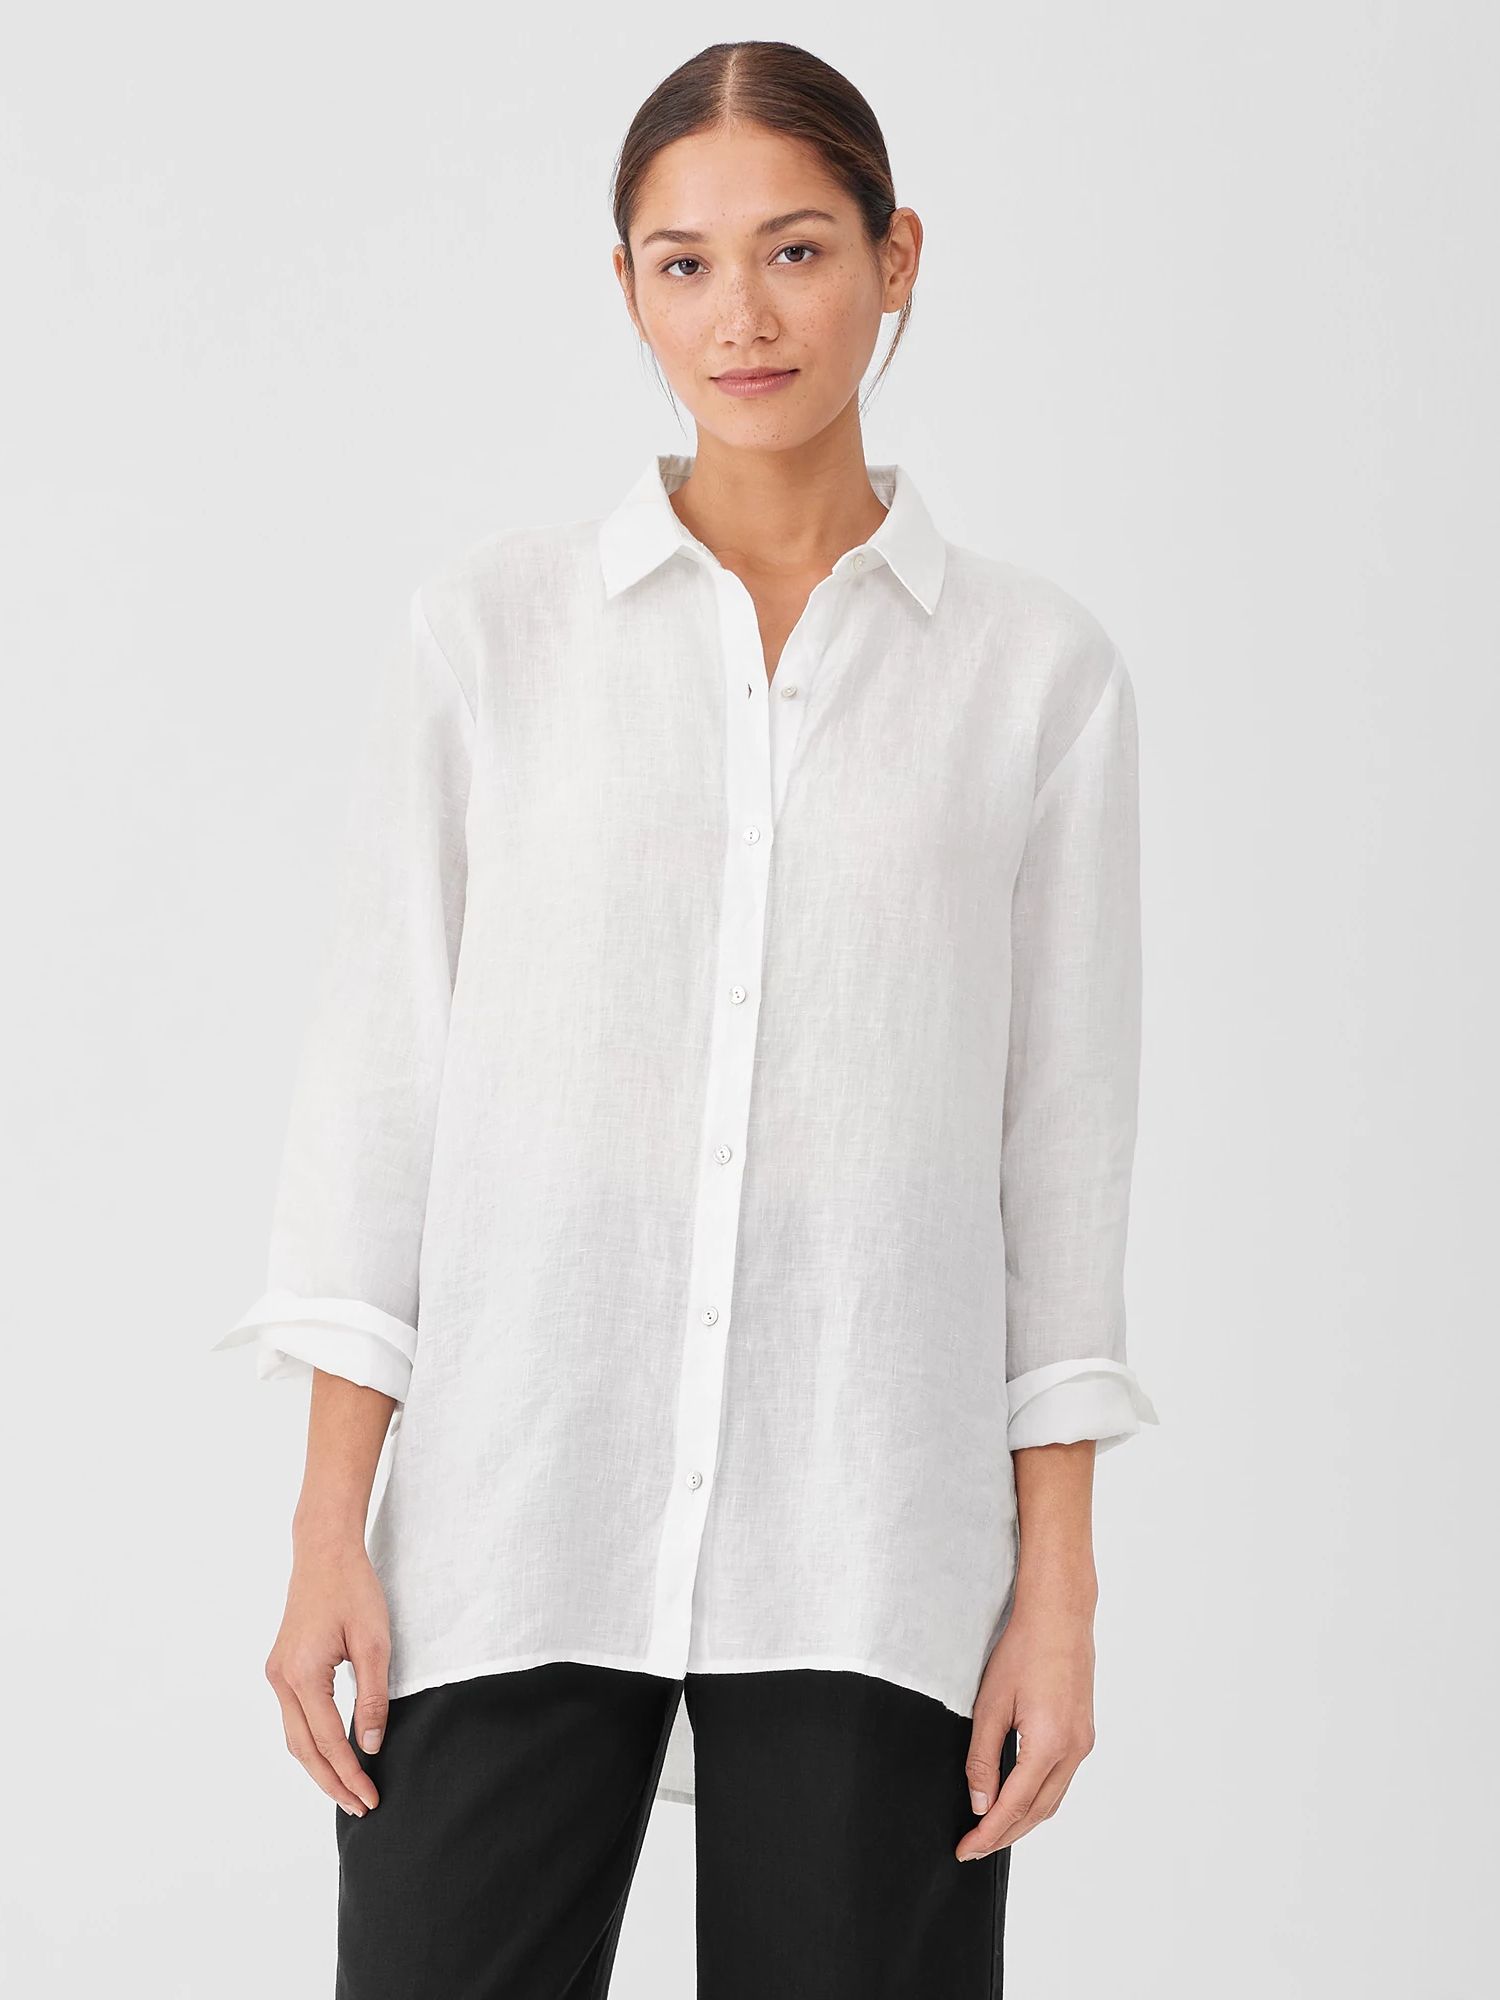 Handkerchief Linen Classic Collar Shirt | Eileen Fisher